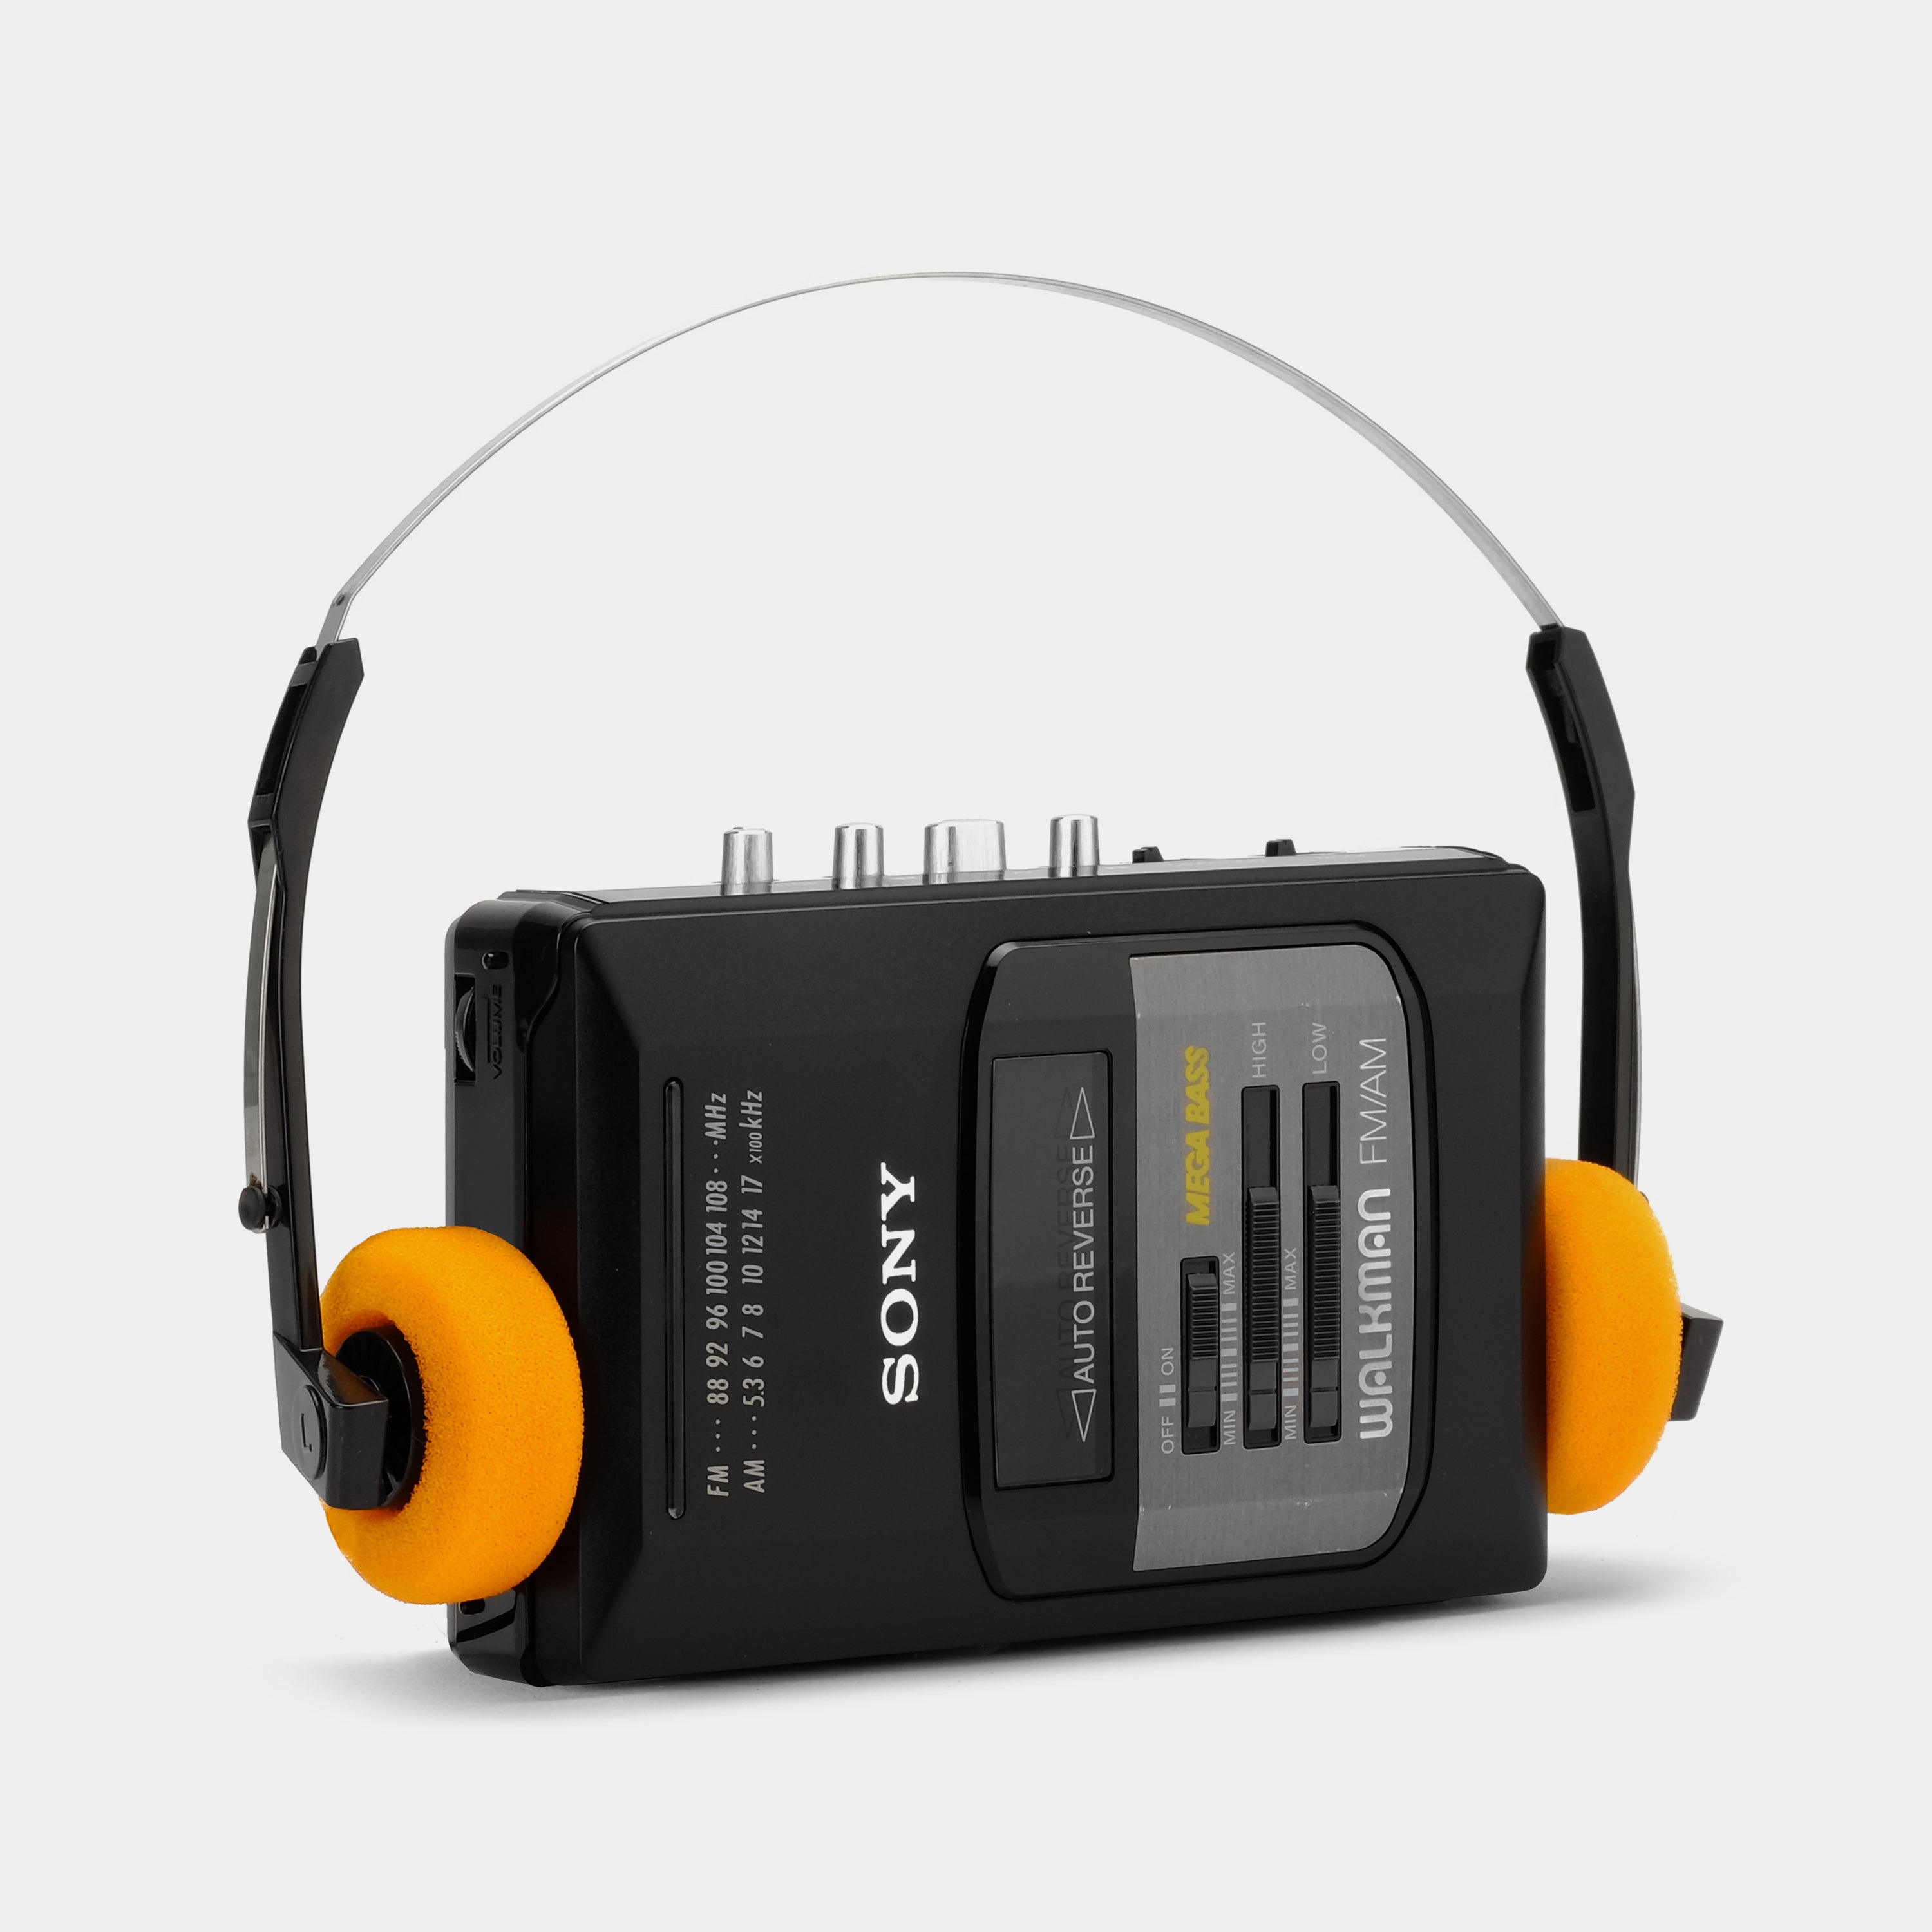 Sony Walkman WM-AF50 MEGA BASS AM/FM Radio Cassette Player